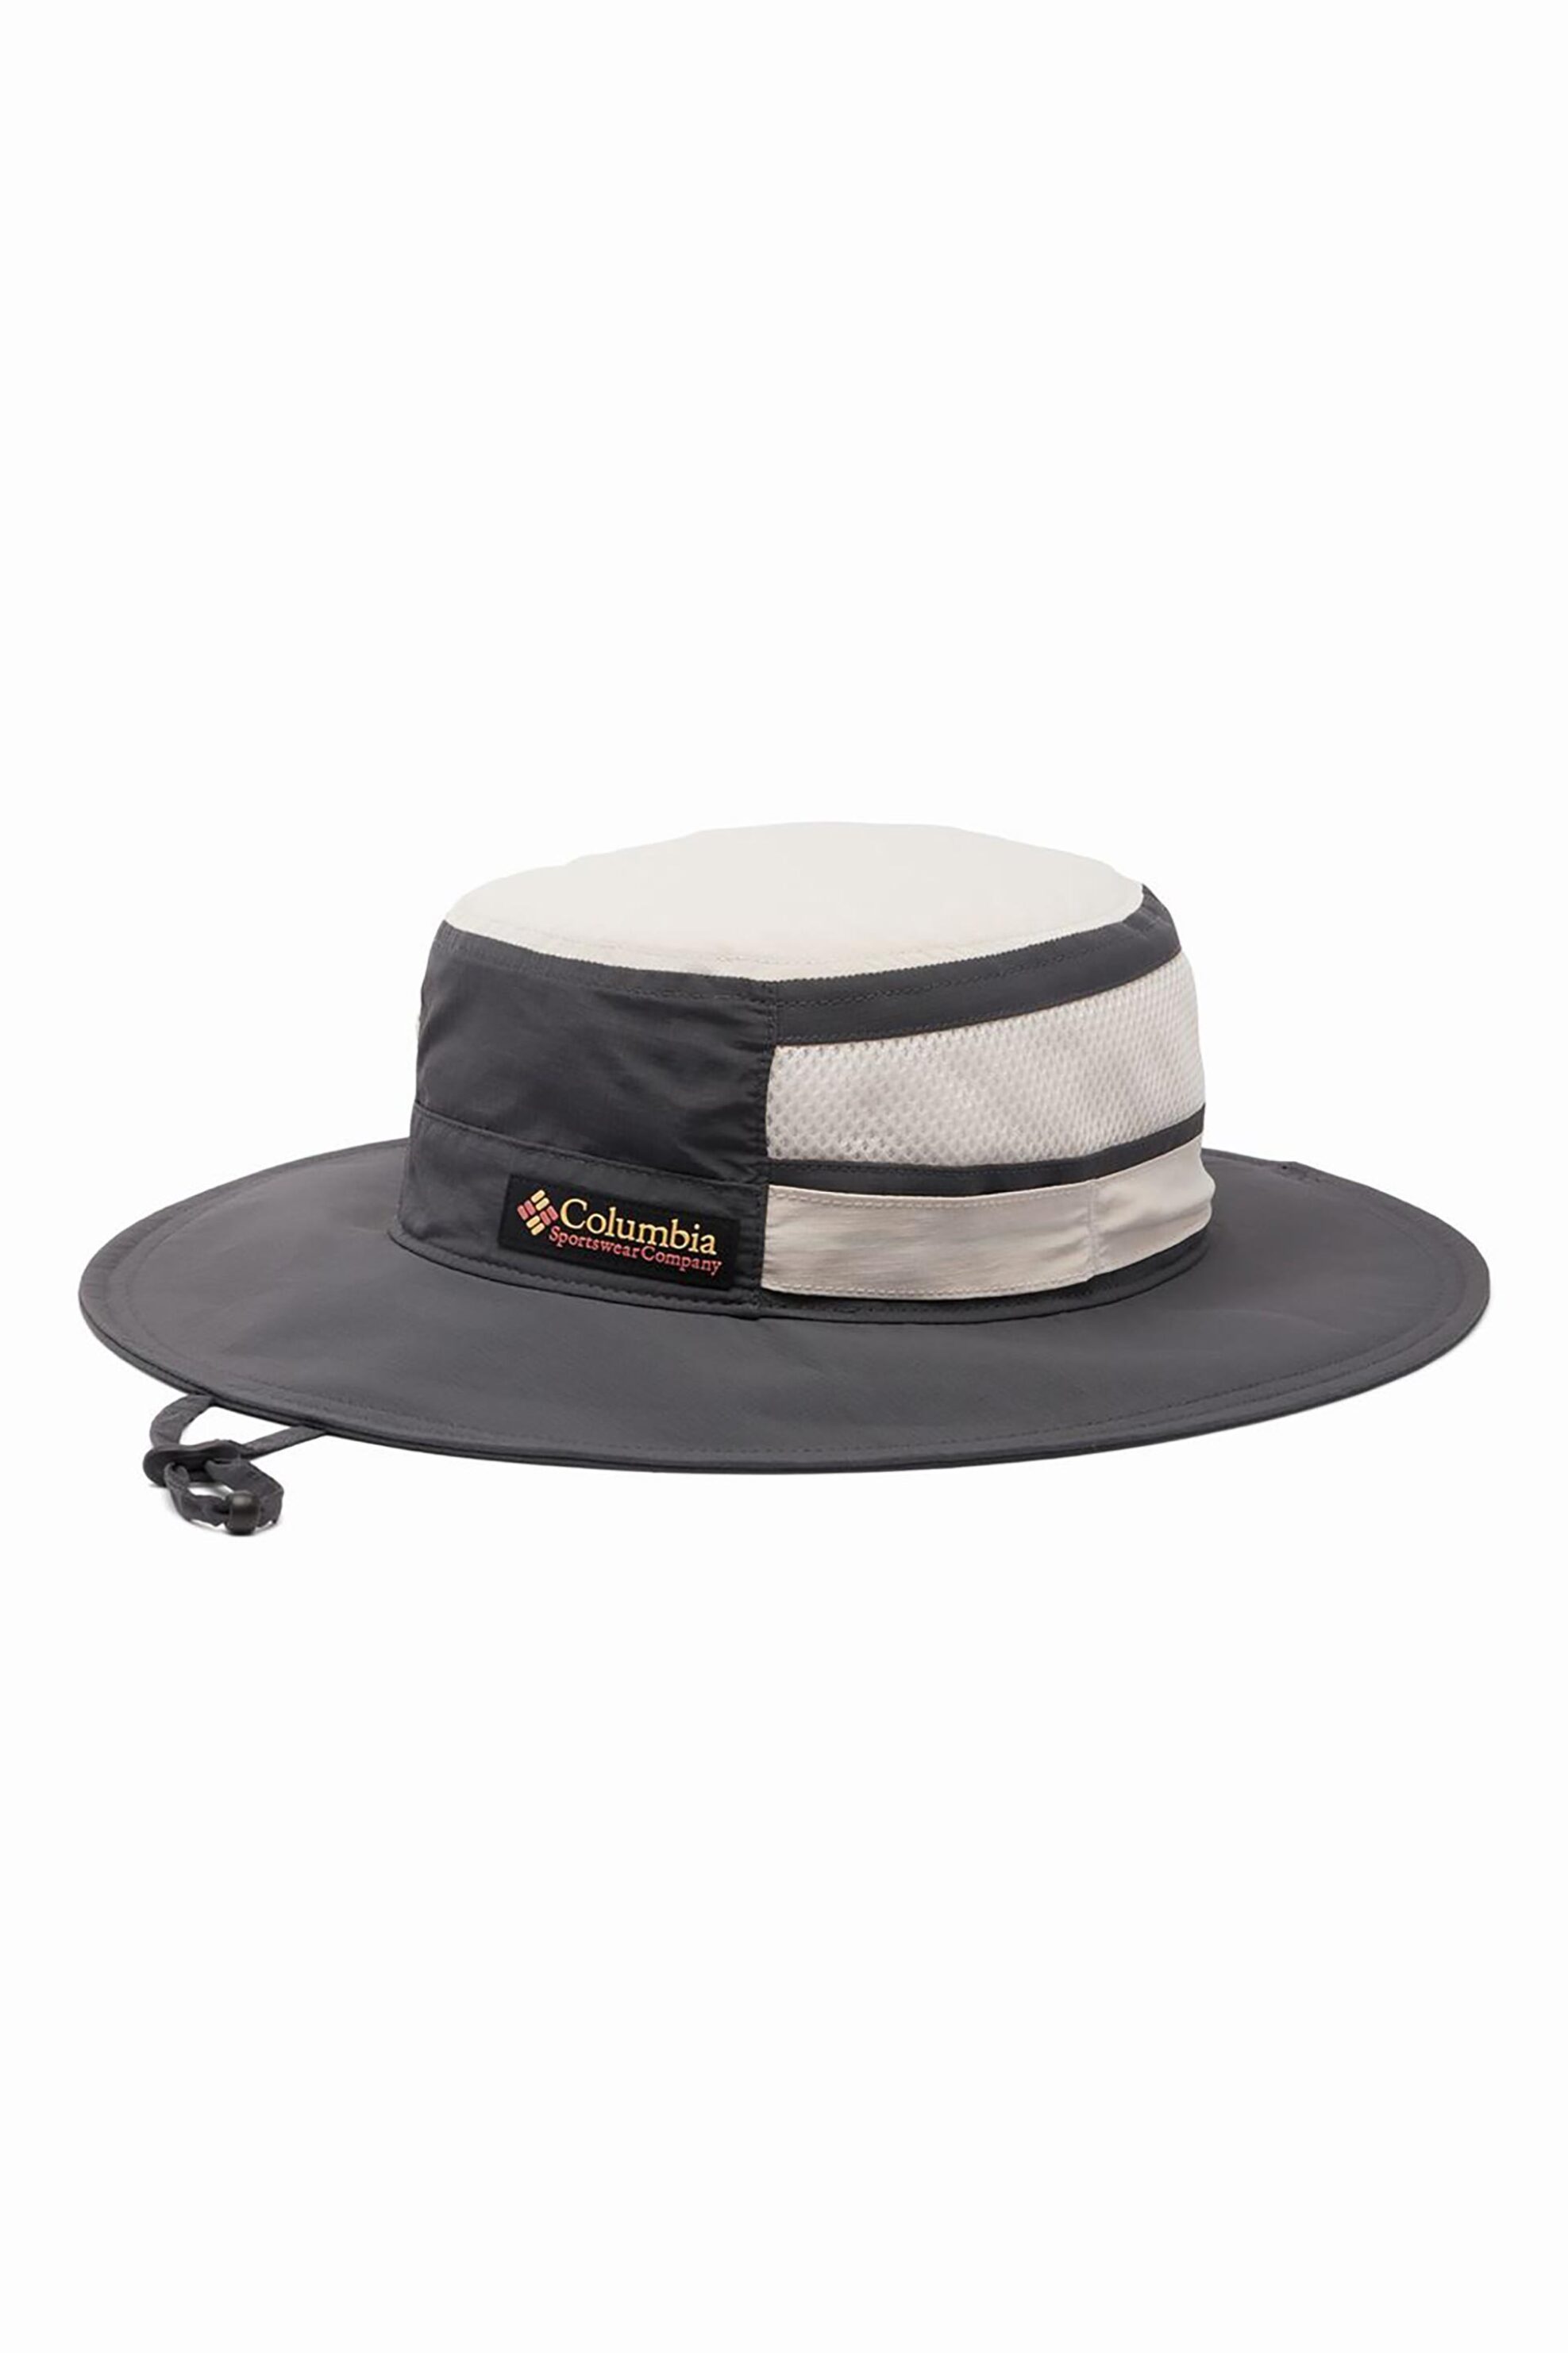 Ανδρική Μόδα > Ανδρικά Αξεσουάρ > Ανδρικά Καπέλα & Σκούφοι Columbia unisex καπέλο δίχρωμο με contrast logo patch "Bora Bora™" - 2077381011TEM Ανθρακί